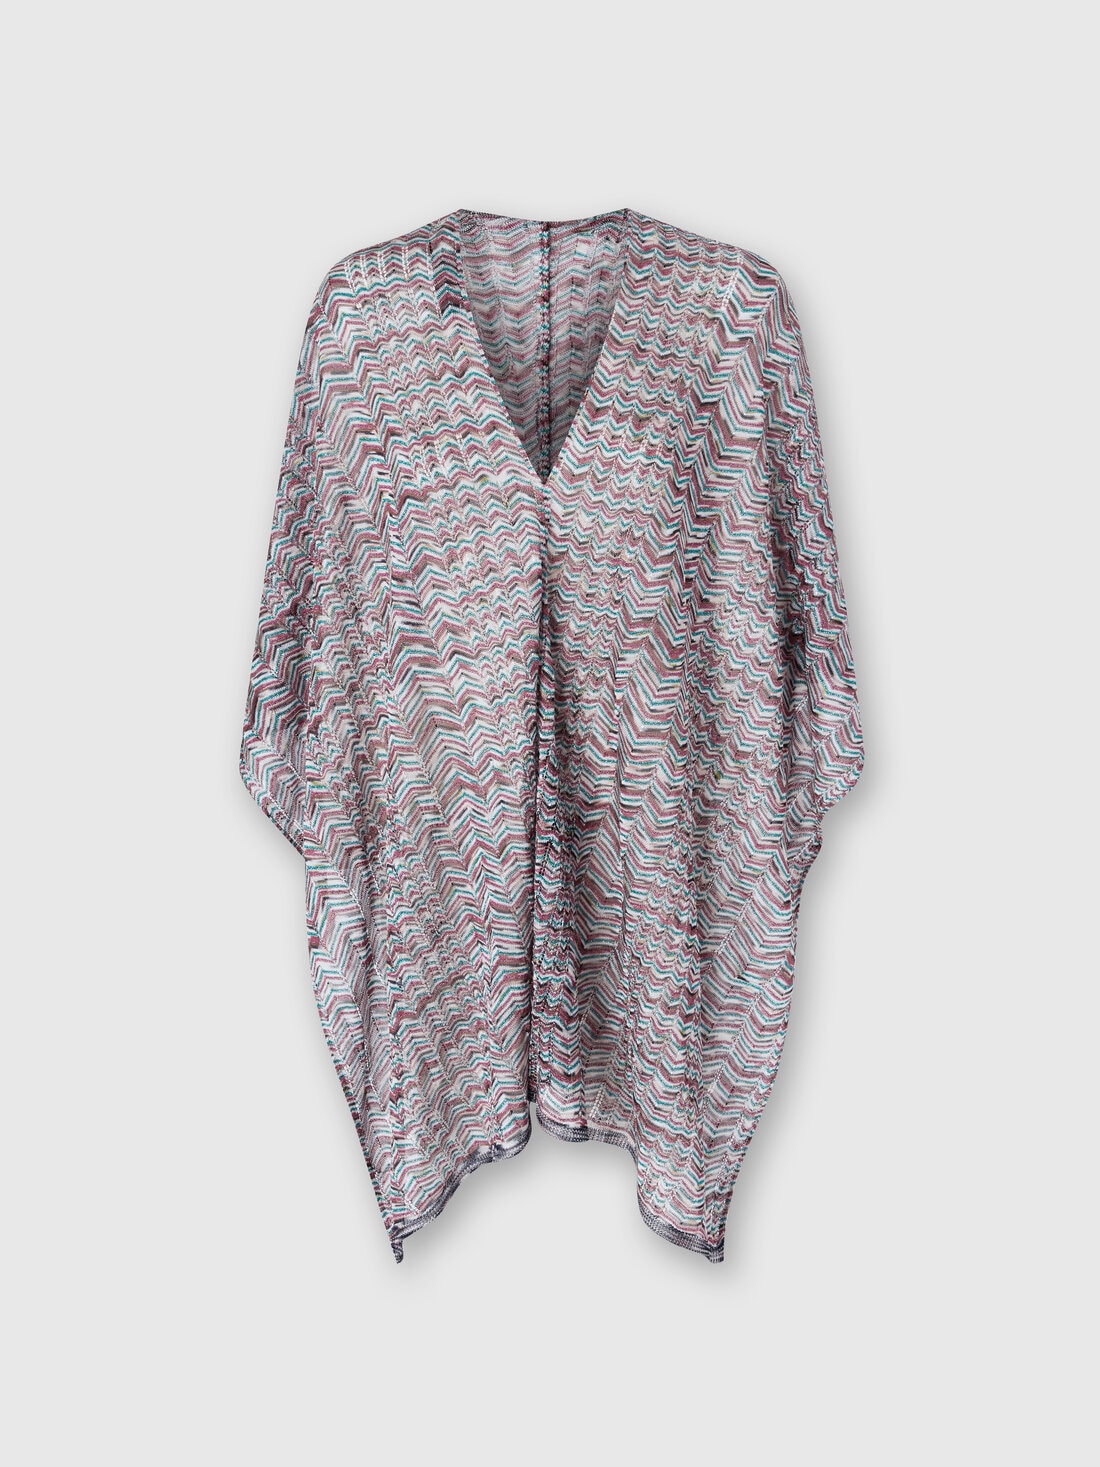 Poncho in viscose and cotton chevron knit, Multicoloured  - 8053147141190 - 0